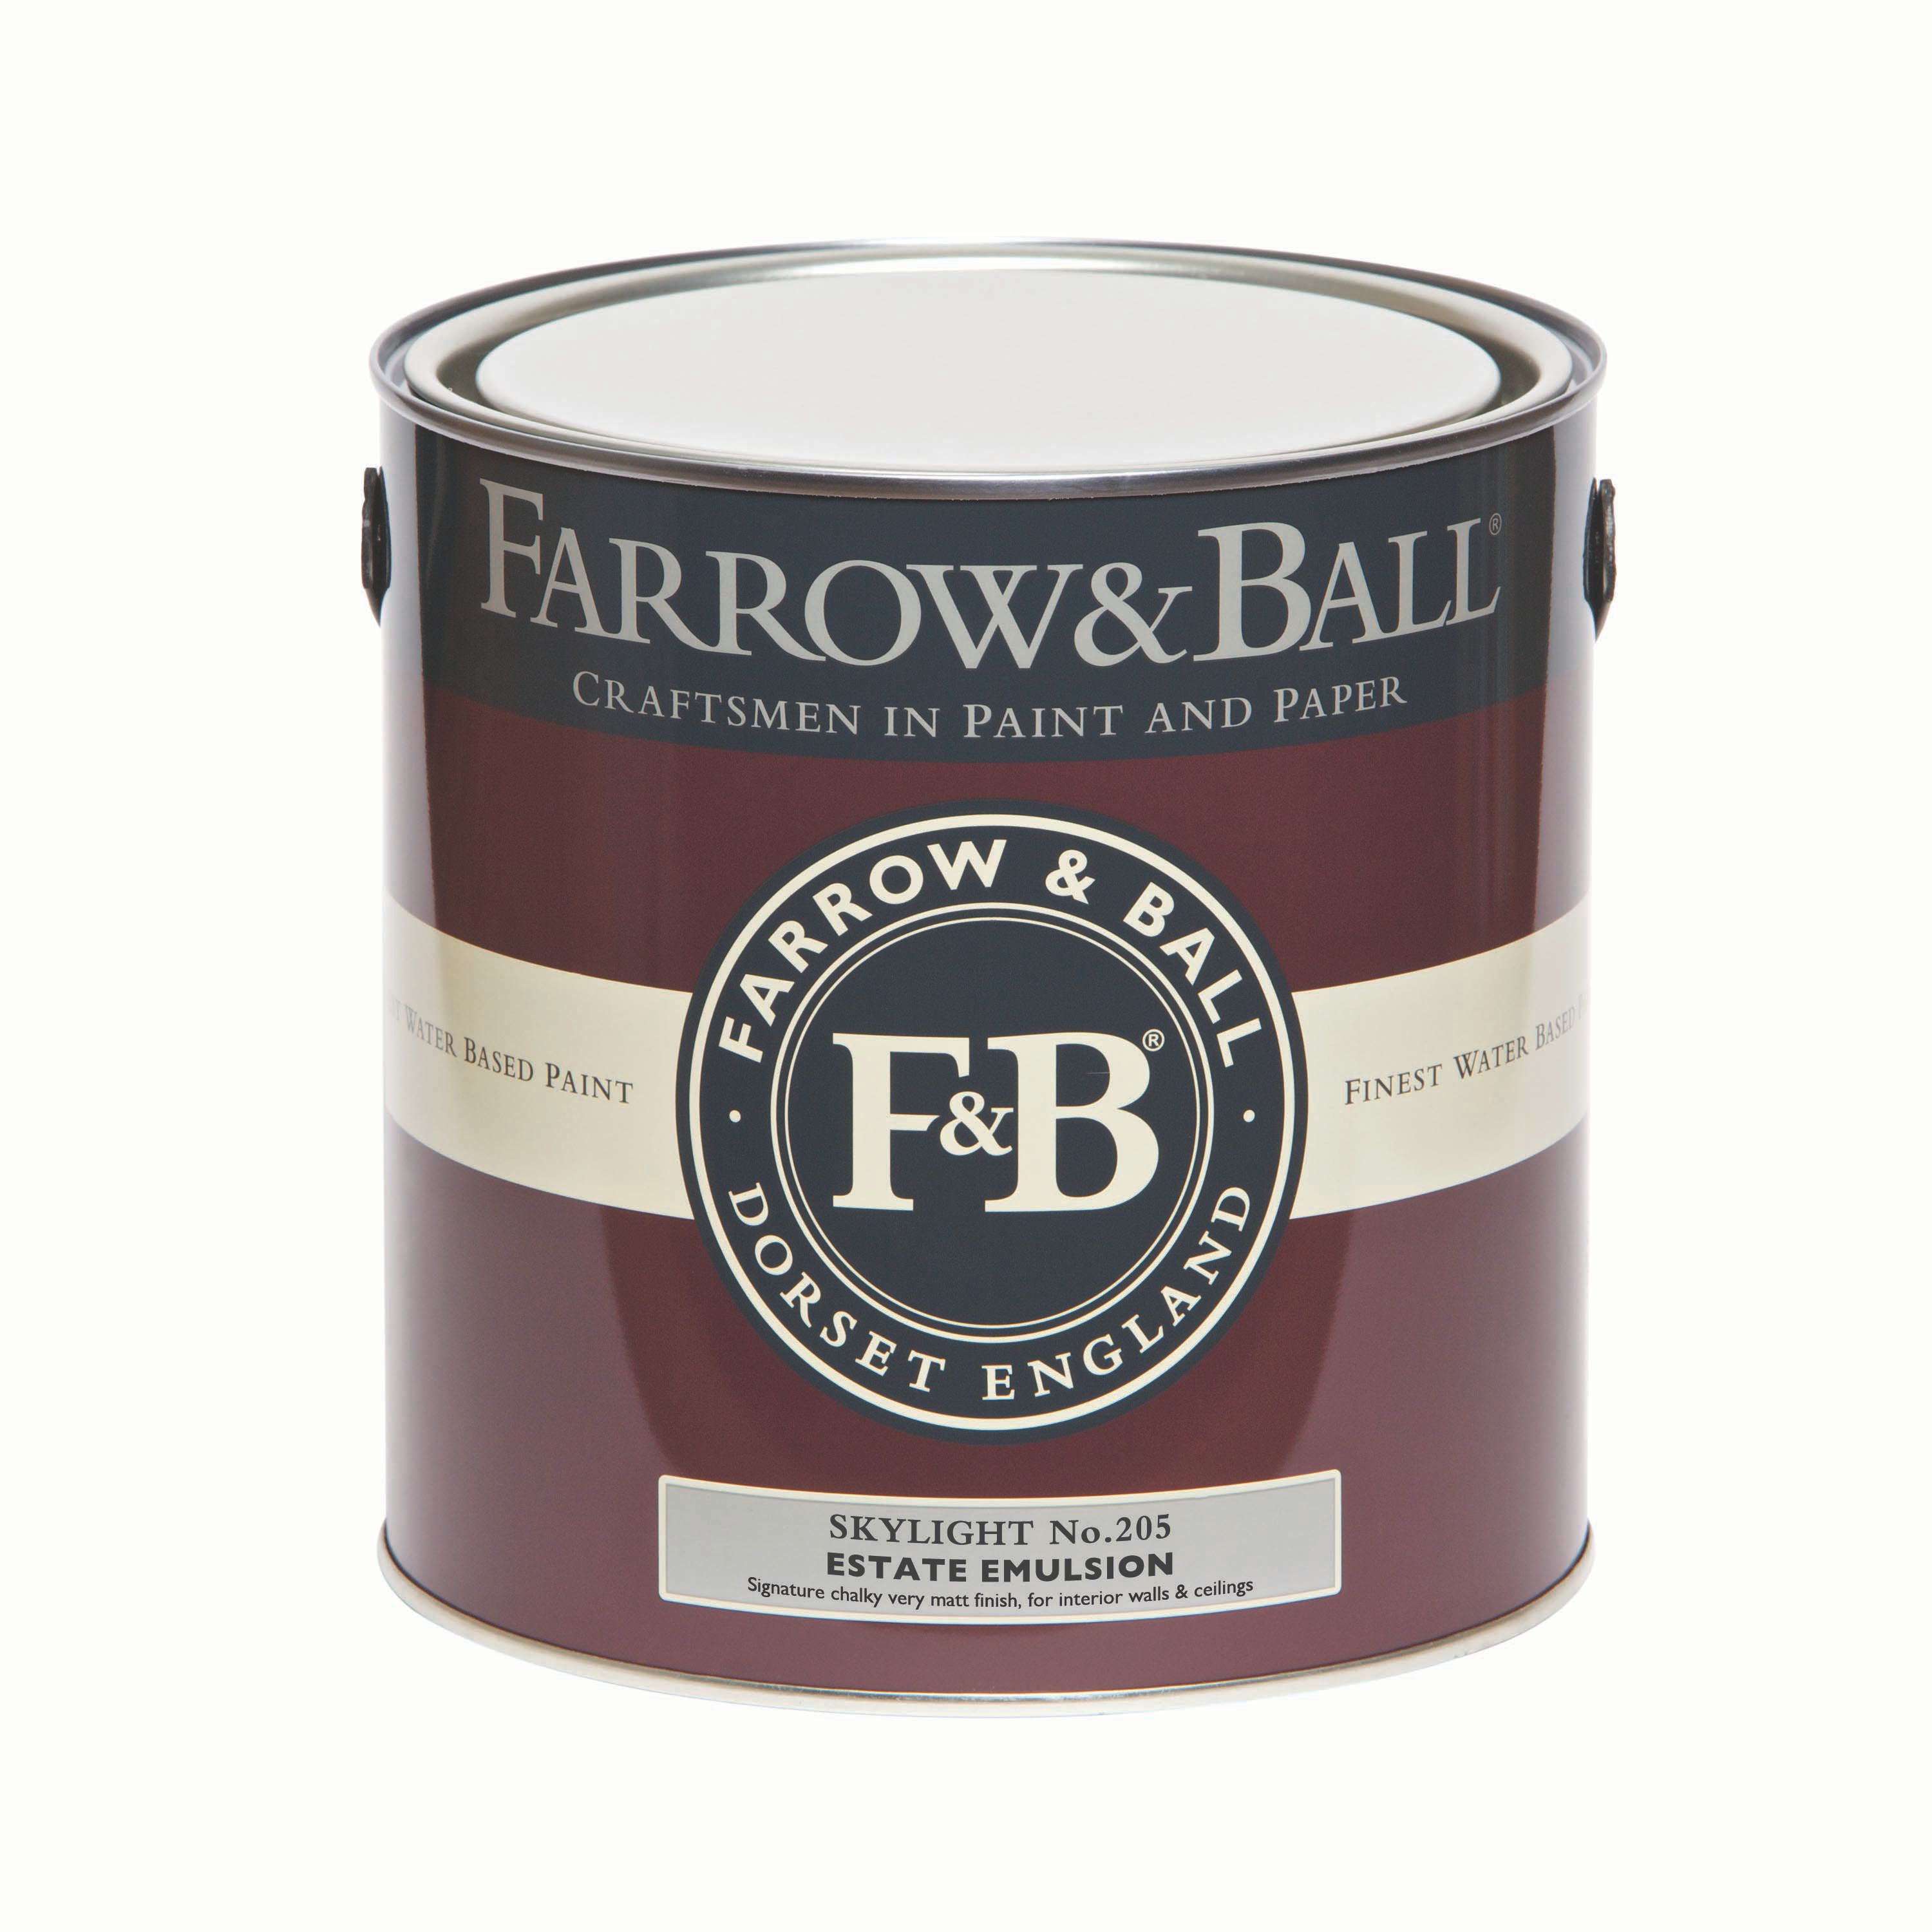 Farrow & Ball Estate Skylight No.205 Matt Emulsion paint, 2.5L